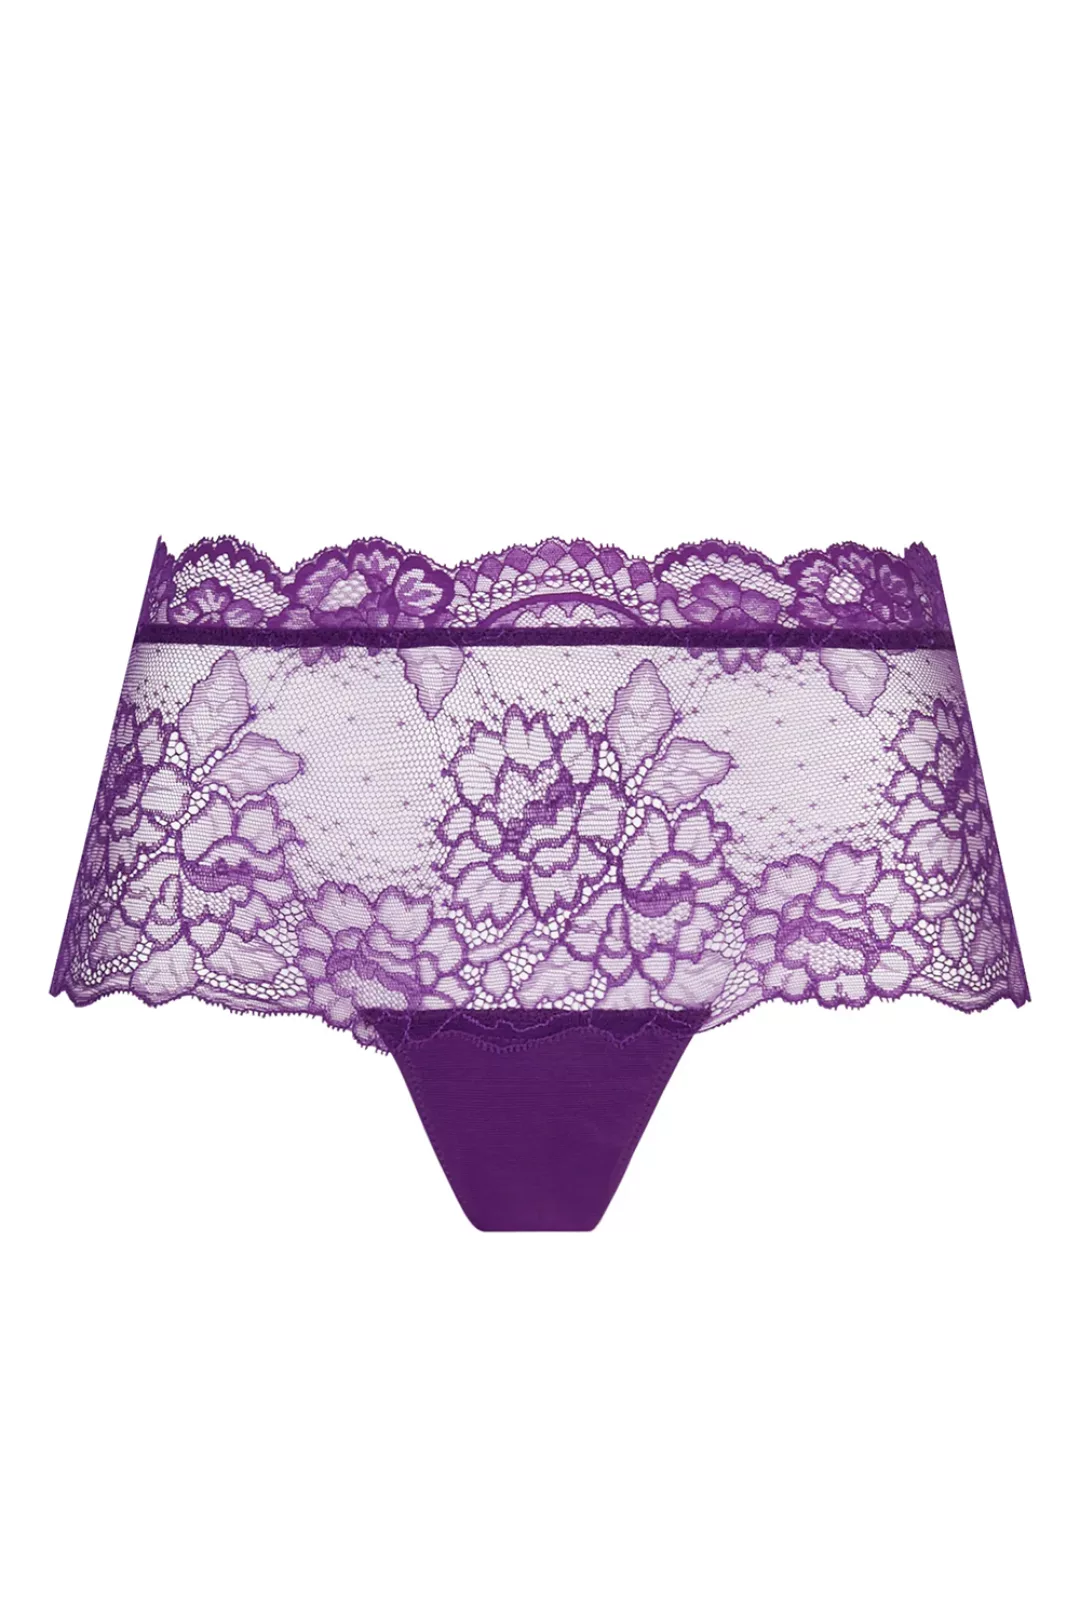 Lise Charmel Shorty Sublime en dentelle 36 violett günstig online kaufen